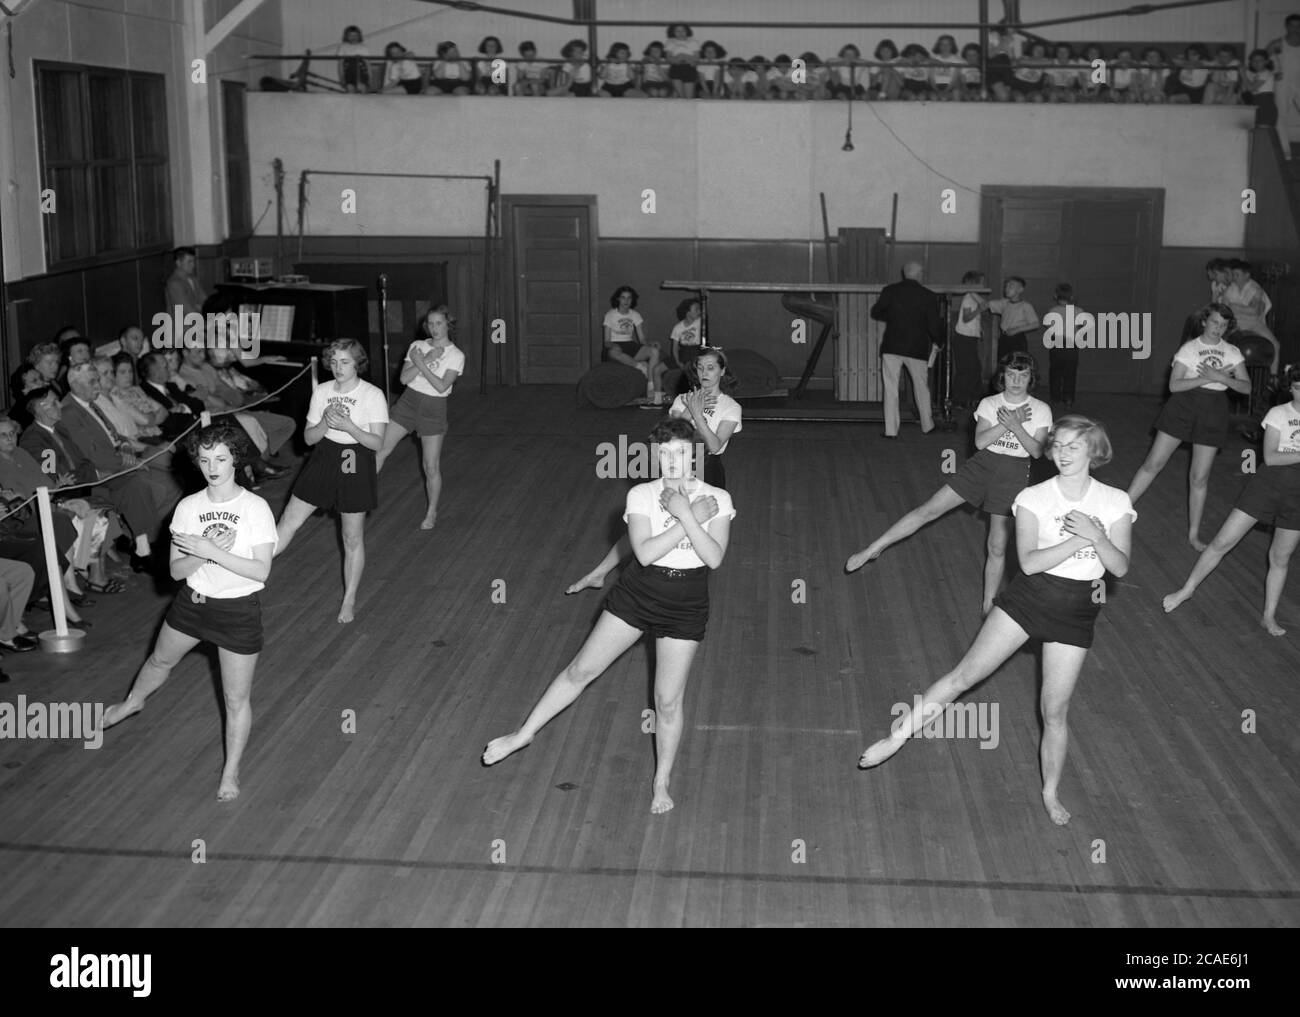 Vers les années 1940, des lycéens de sexe féminin dans une salle de sport faisant une exposition artistique ou gymnastique au sol devant les parents et les invités, ma, USA. Banque D'Images